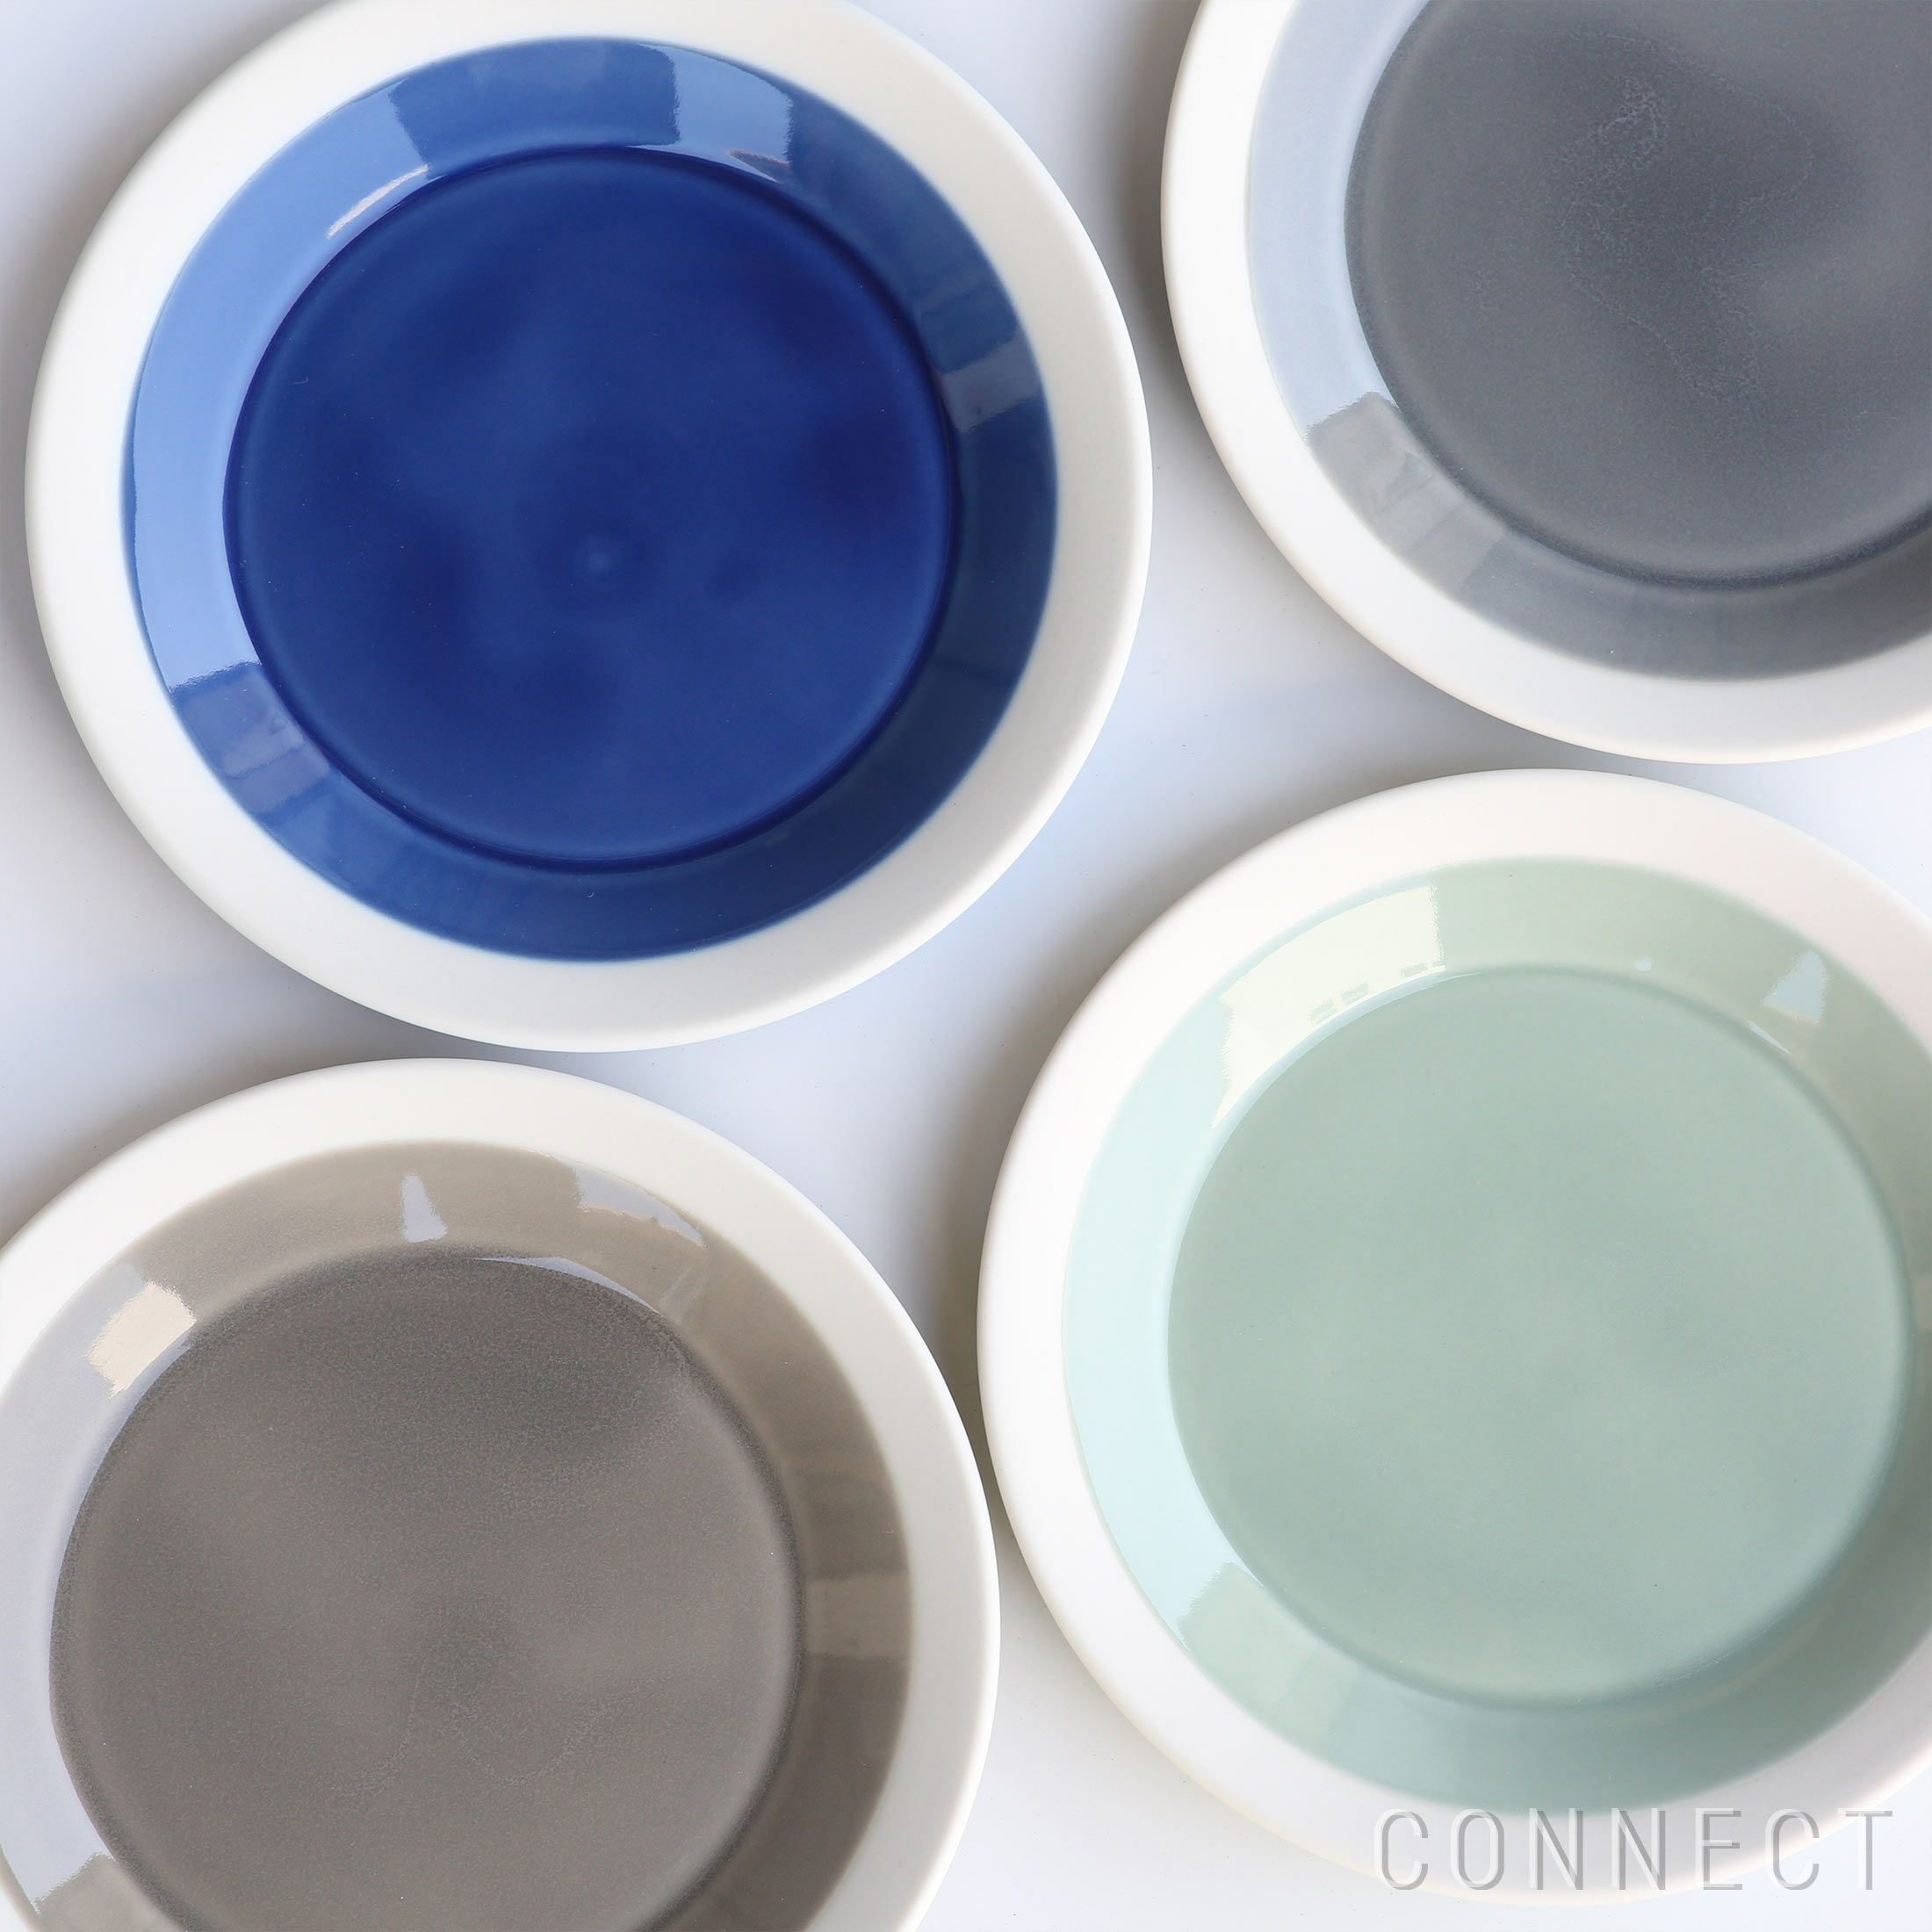 yumiko iihoshi porcelain （イイホシユミコ） / dishes（ディッシーズ） / plate（プレート）140 / 全6色